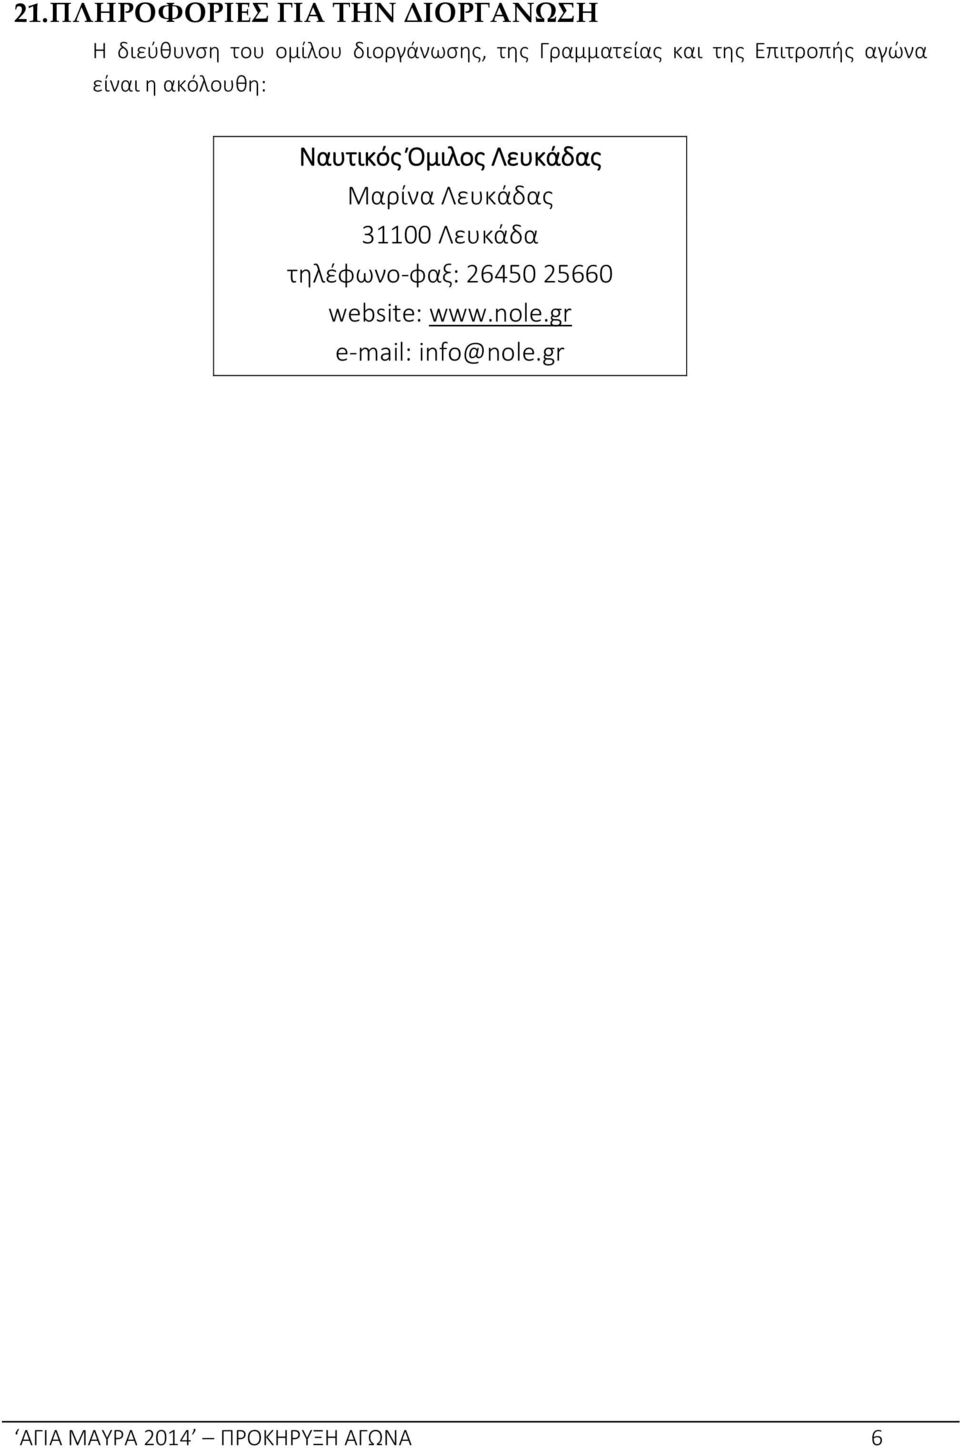 Όμιλος Λευκάδας Μαρίνα Λευκάδας 31100 Λευκάδα τηλέφωνο φαξ: 26450 25660